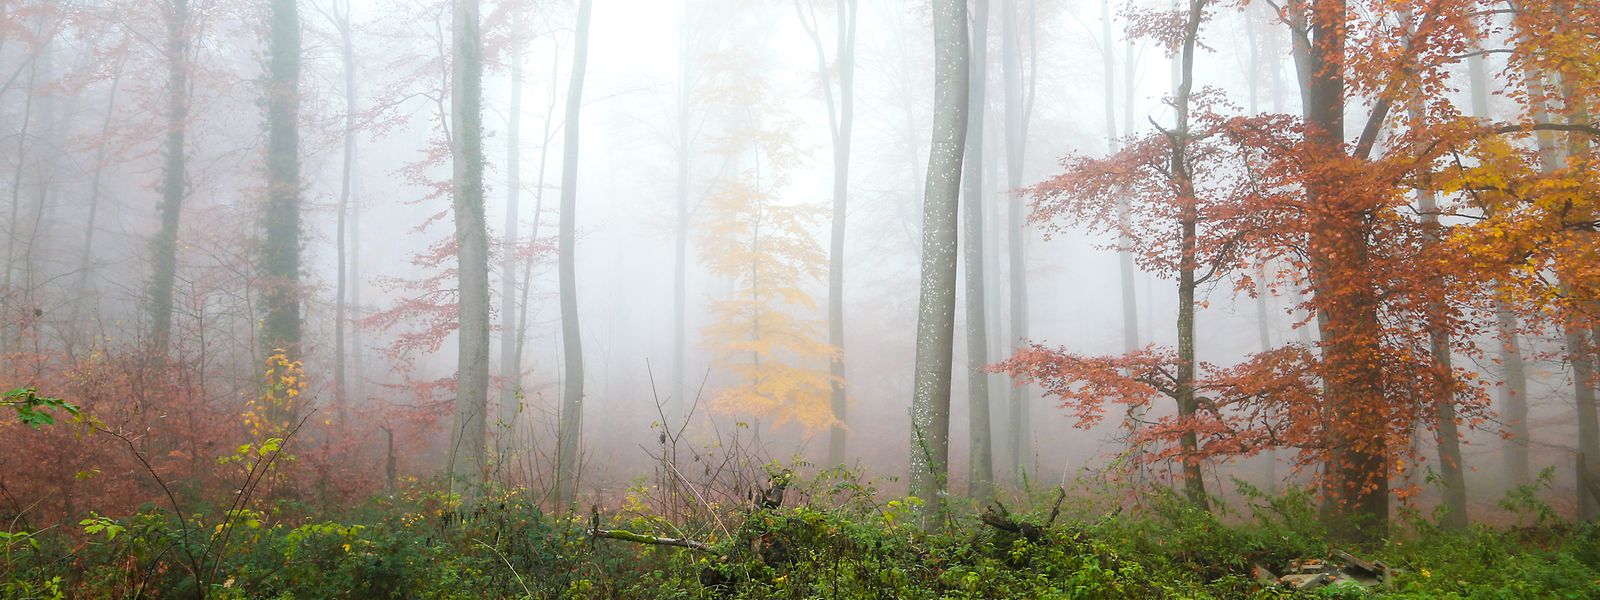 Ab und an machte sich Nebel breit, sonst lud das Wetter im Herbst meist zu ausgedehnten Spaziergängen in der Natur ein.